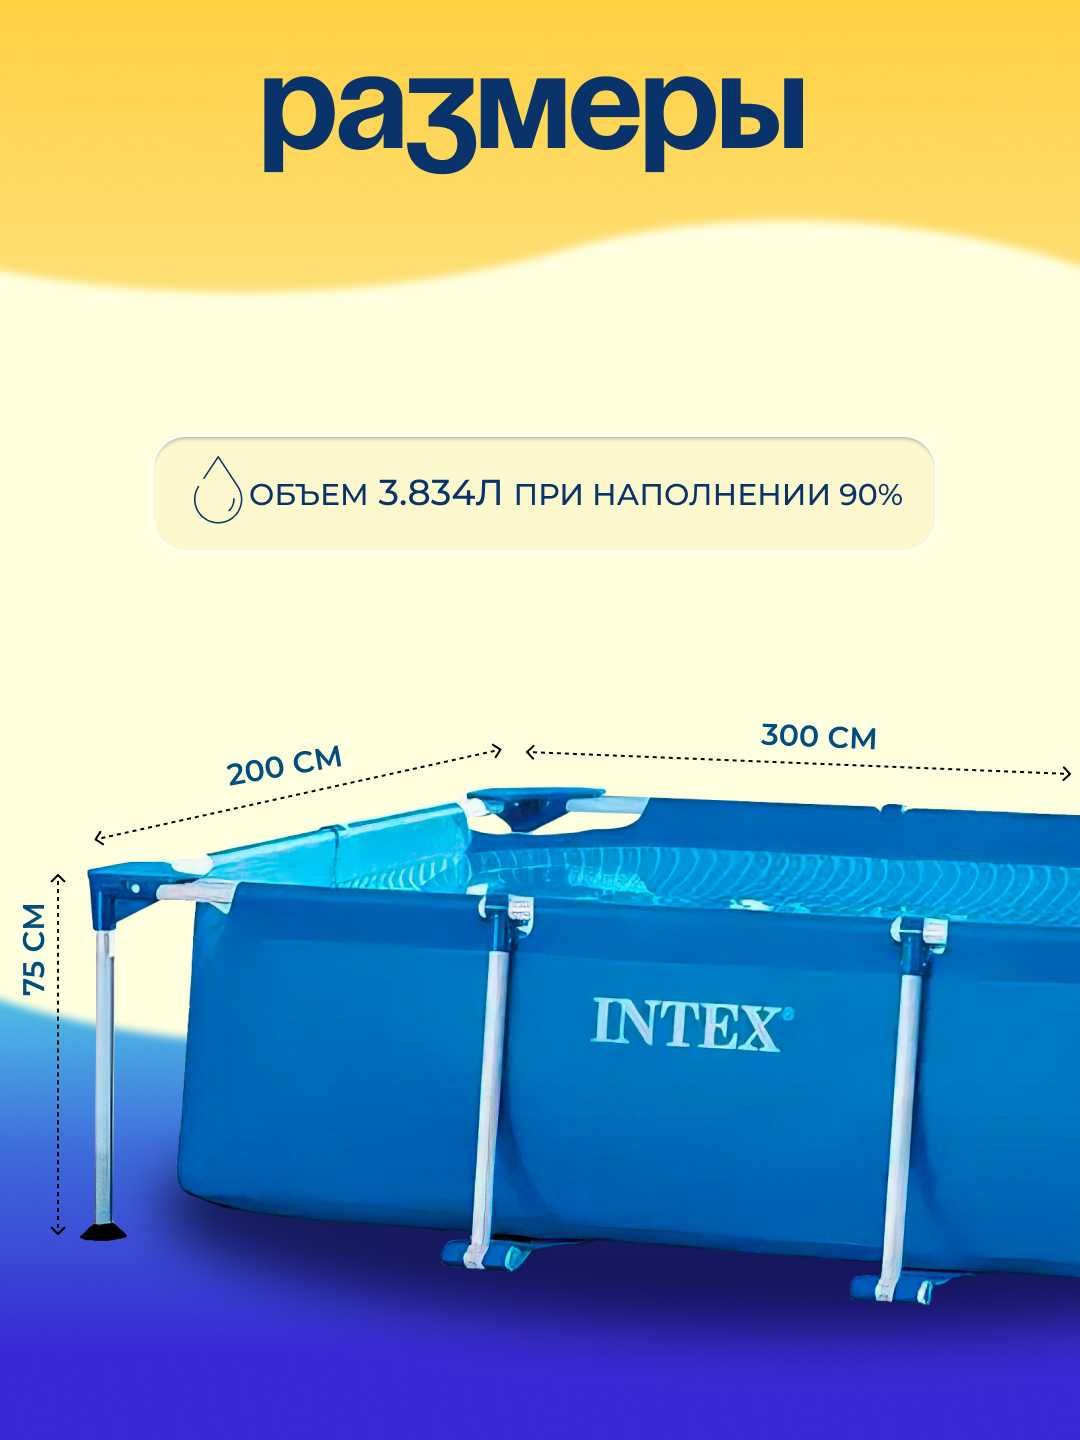 Каркасный прямоугольный бассейн INTEX, 300 * 200 * 75 см, 3834 л